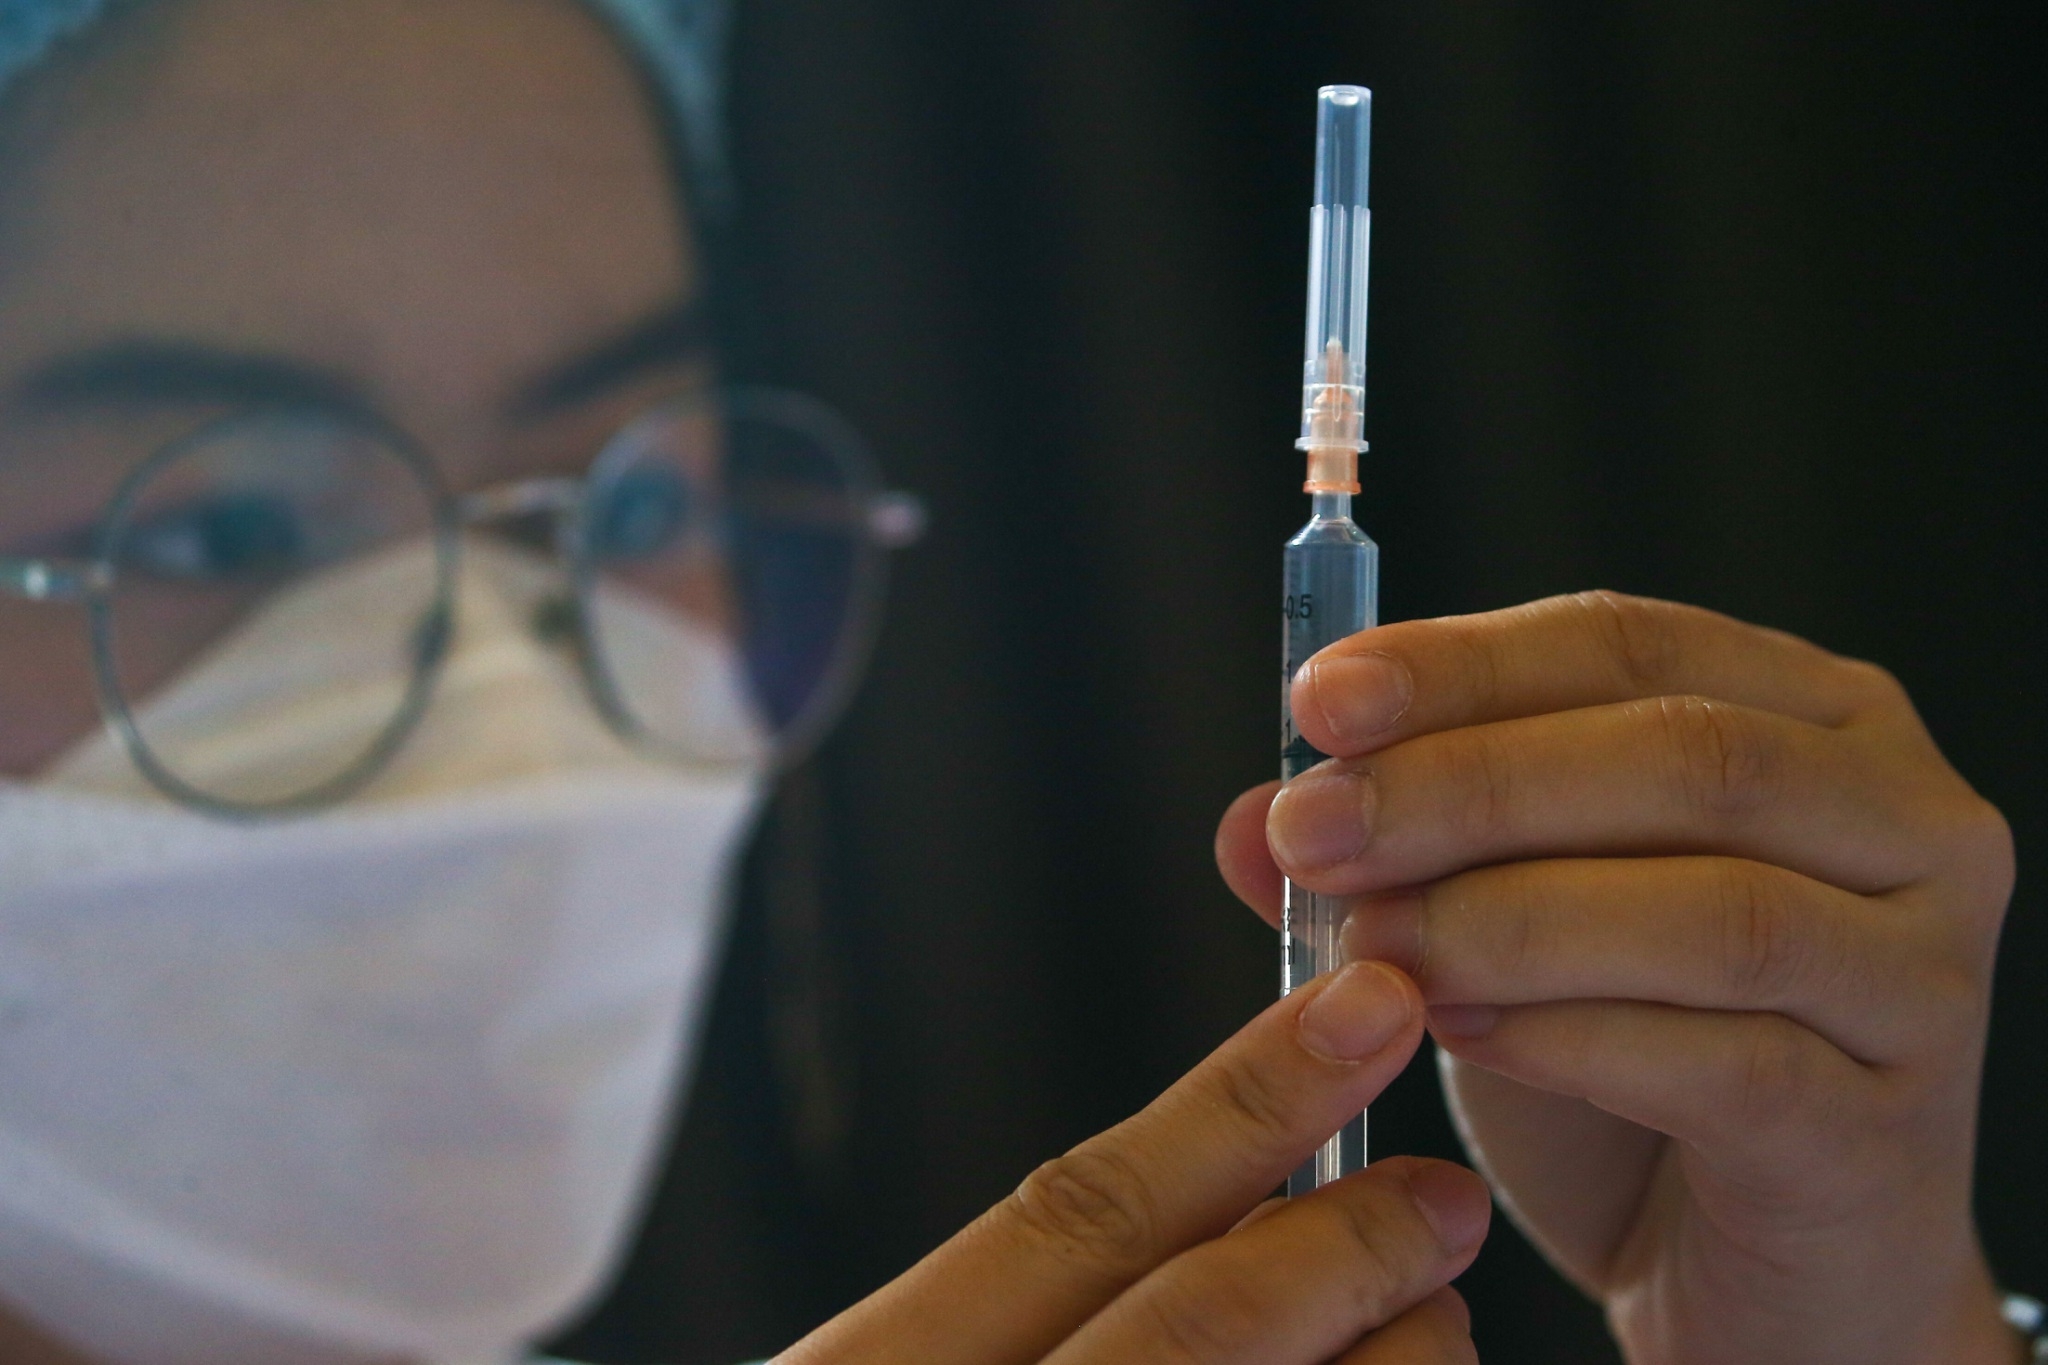 รพ.วชิระภูเก็ต เผยฉีดเข็ม 3 เข้าผิวหนังใช้วัคซีนเพียง 20% ภูมิขึ้นสูงกว่าปกติ